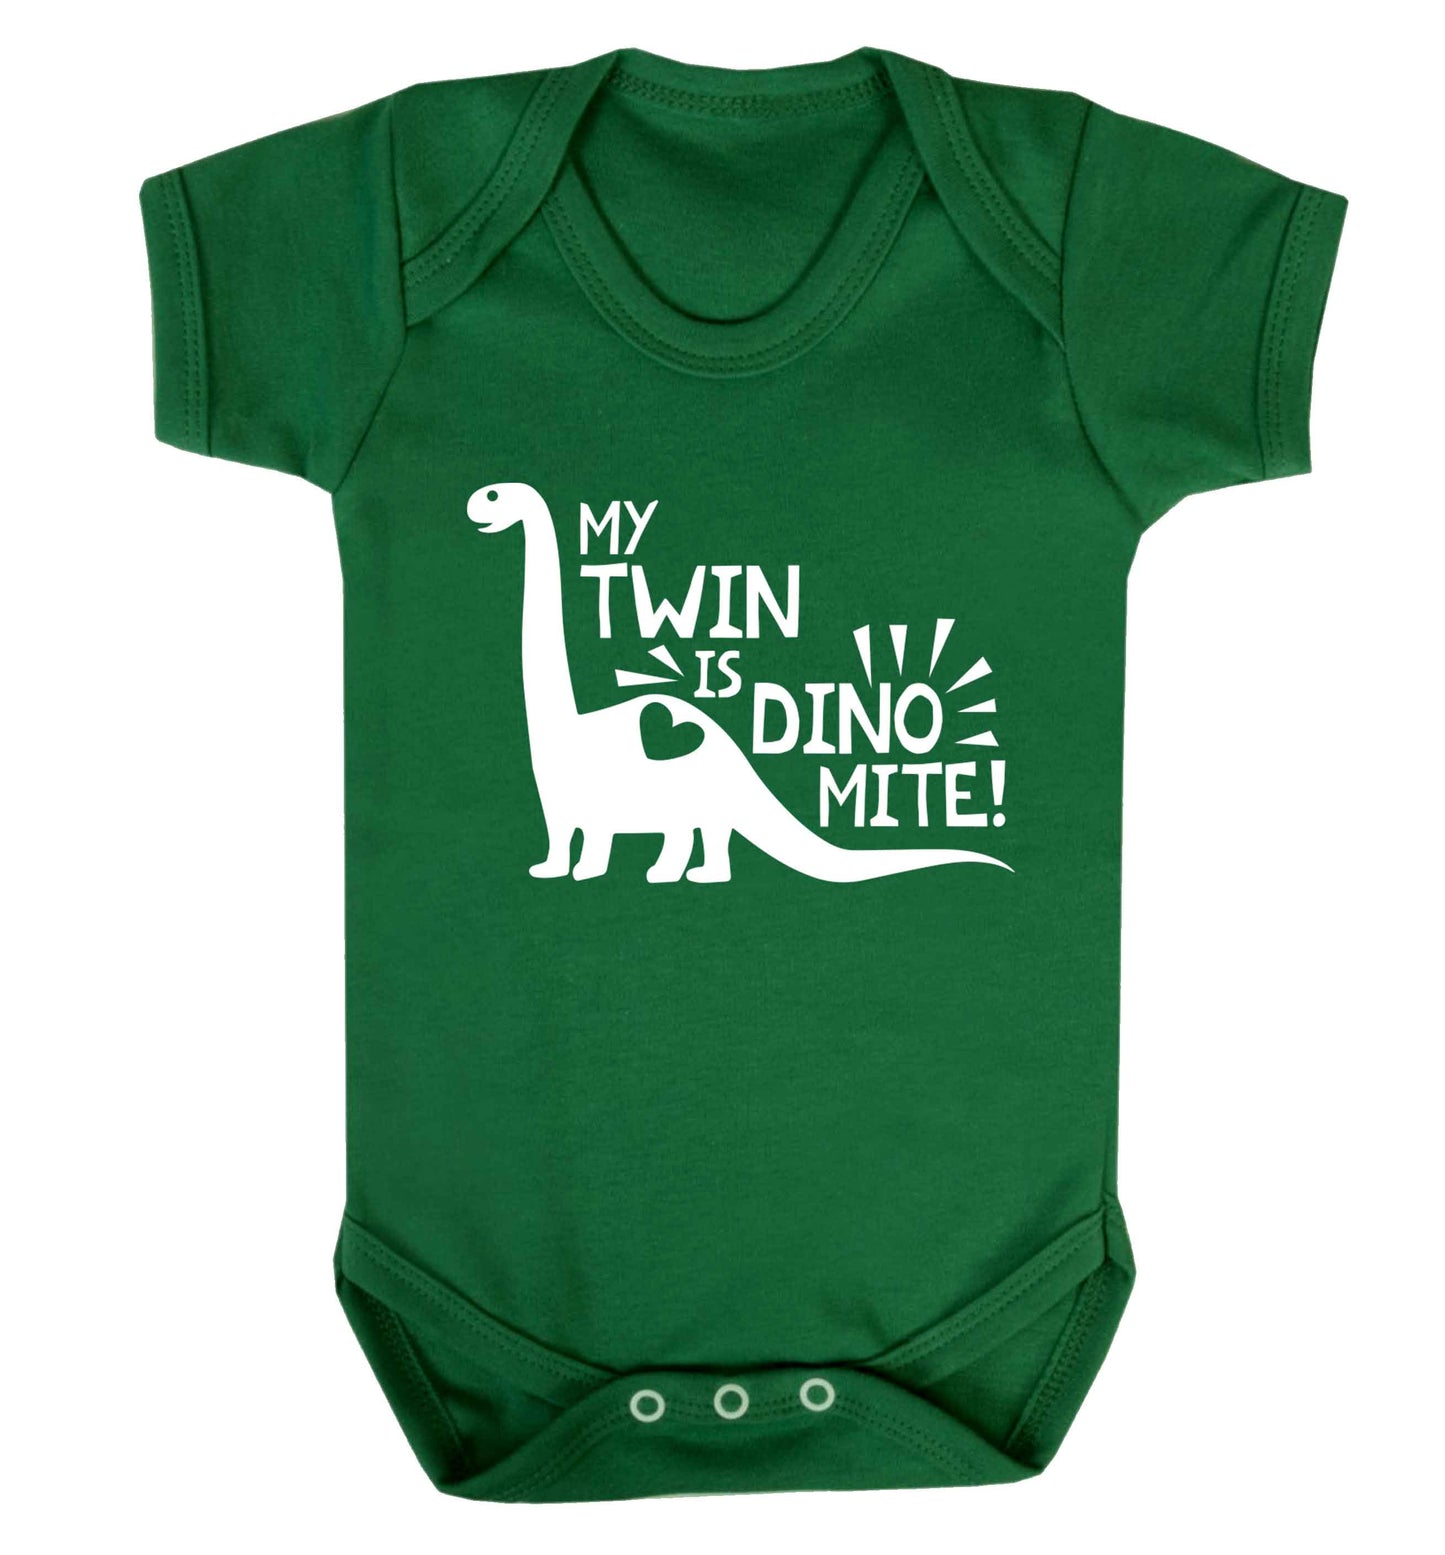 My twin is dinomite! Baby Vest green 18-24 months